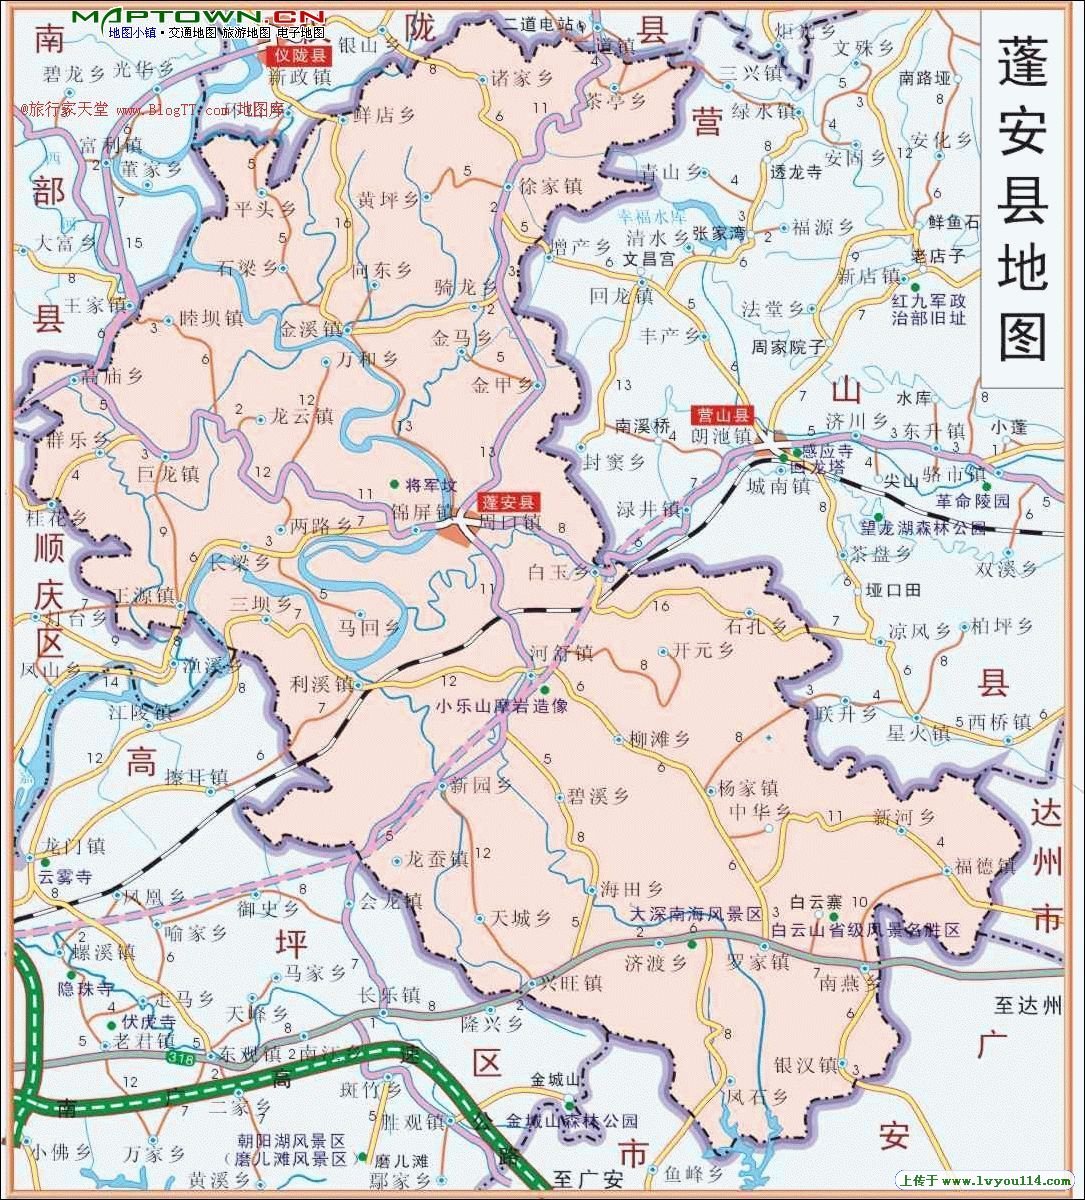 7月21日正式批复四川省普通省道网布局规划,看蓬安g318\g244\s101